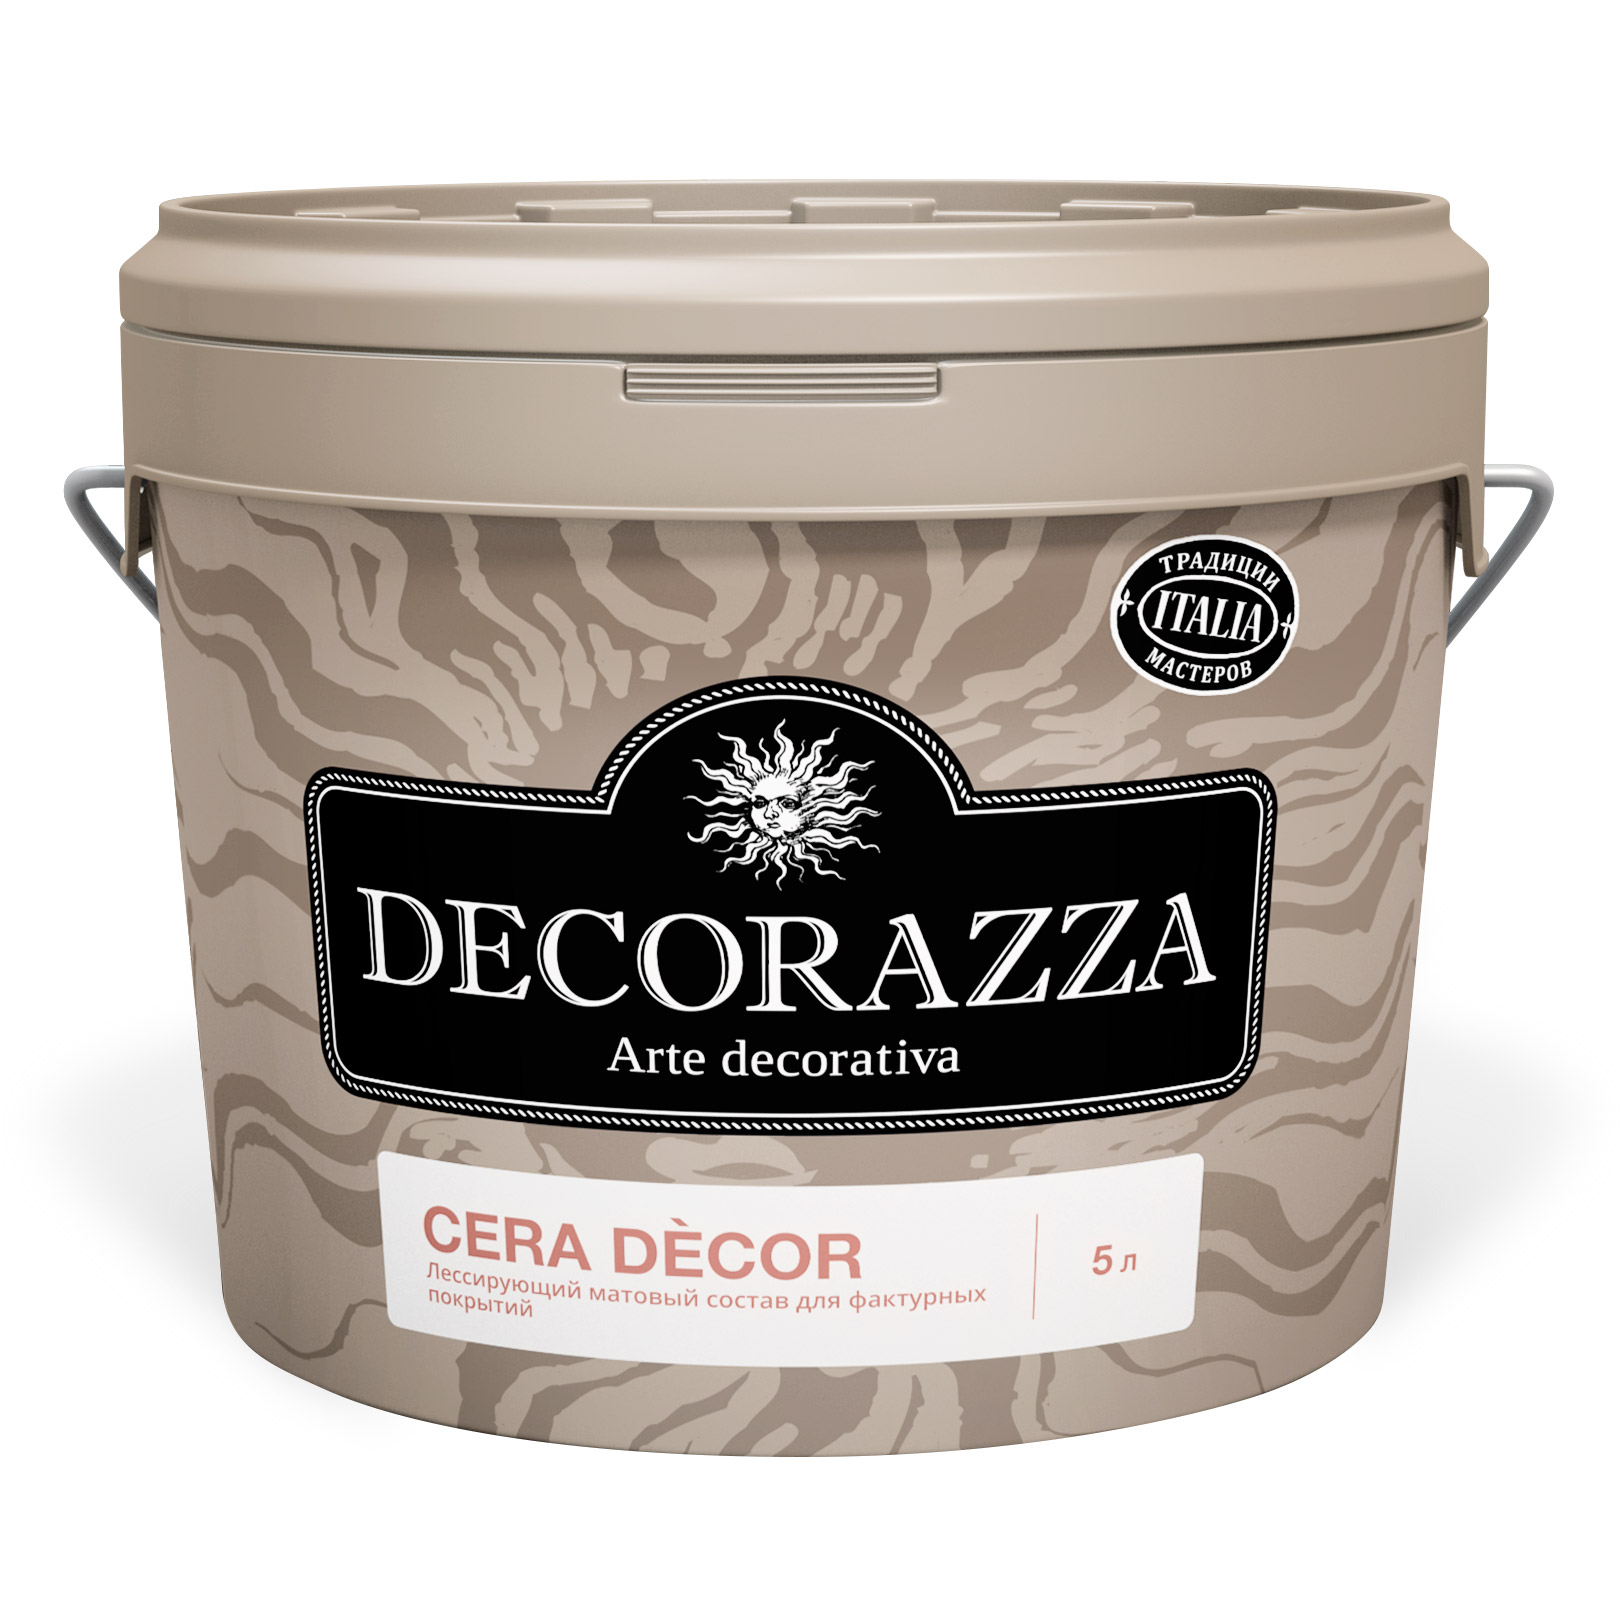 Воск для штукатурок Cera Decor Decorazza 2,5 кг